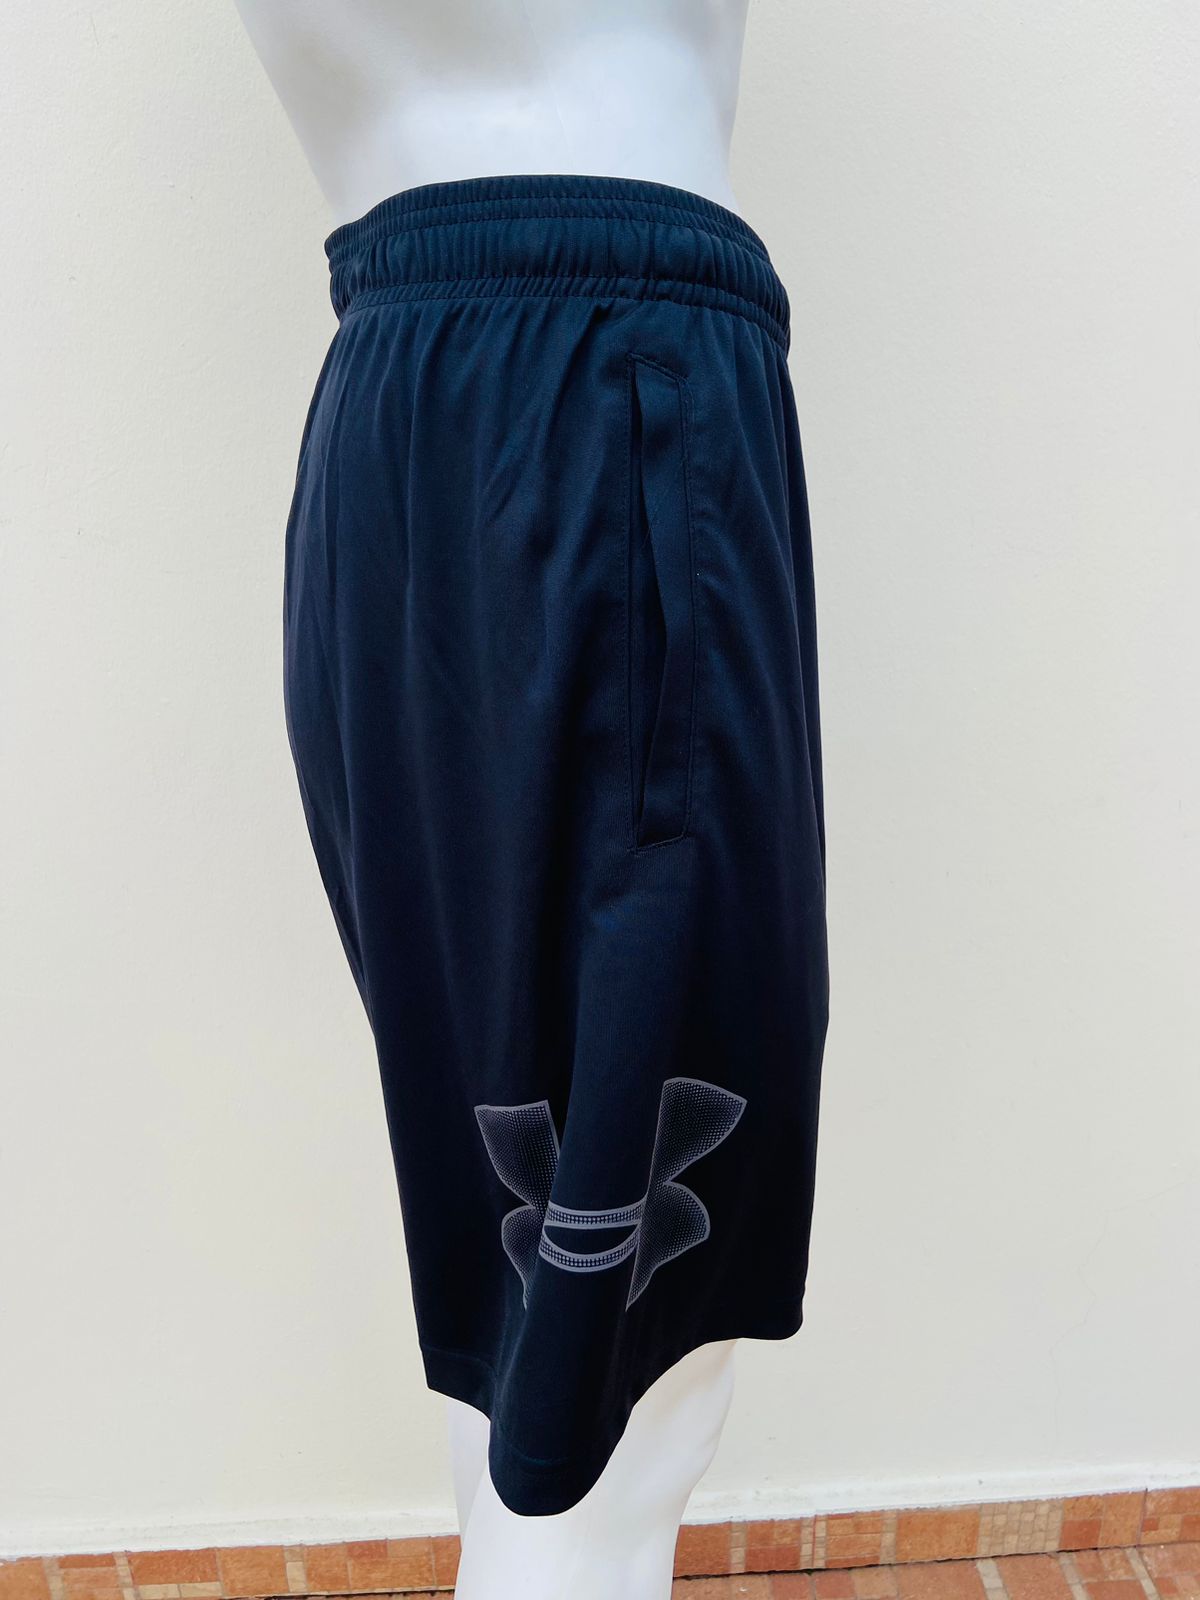 Shorts de gymnasio UNDER ARMOUR original negro con logotipo de la marca en un lado en color gris.